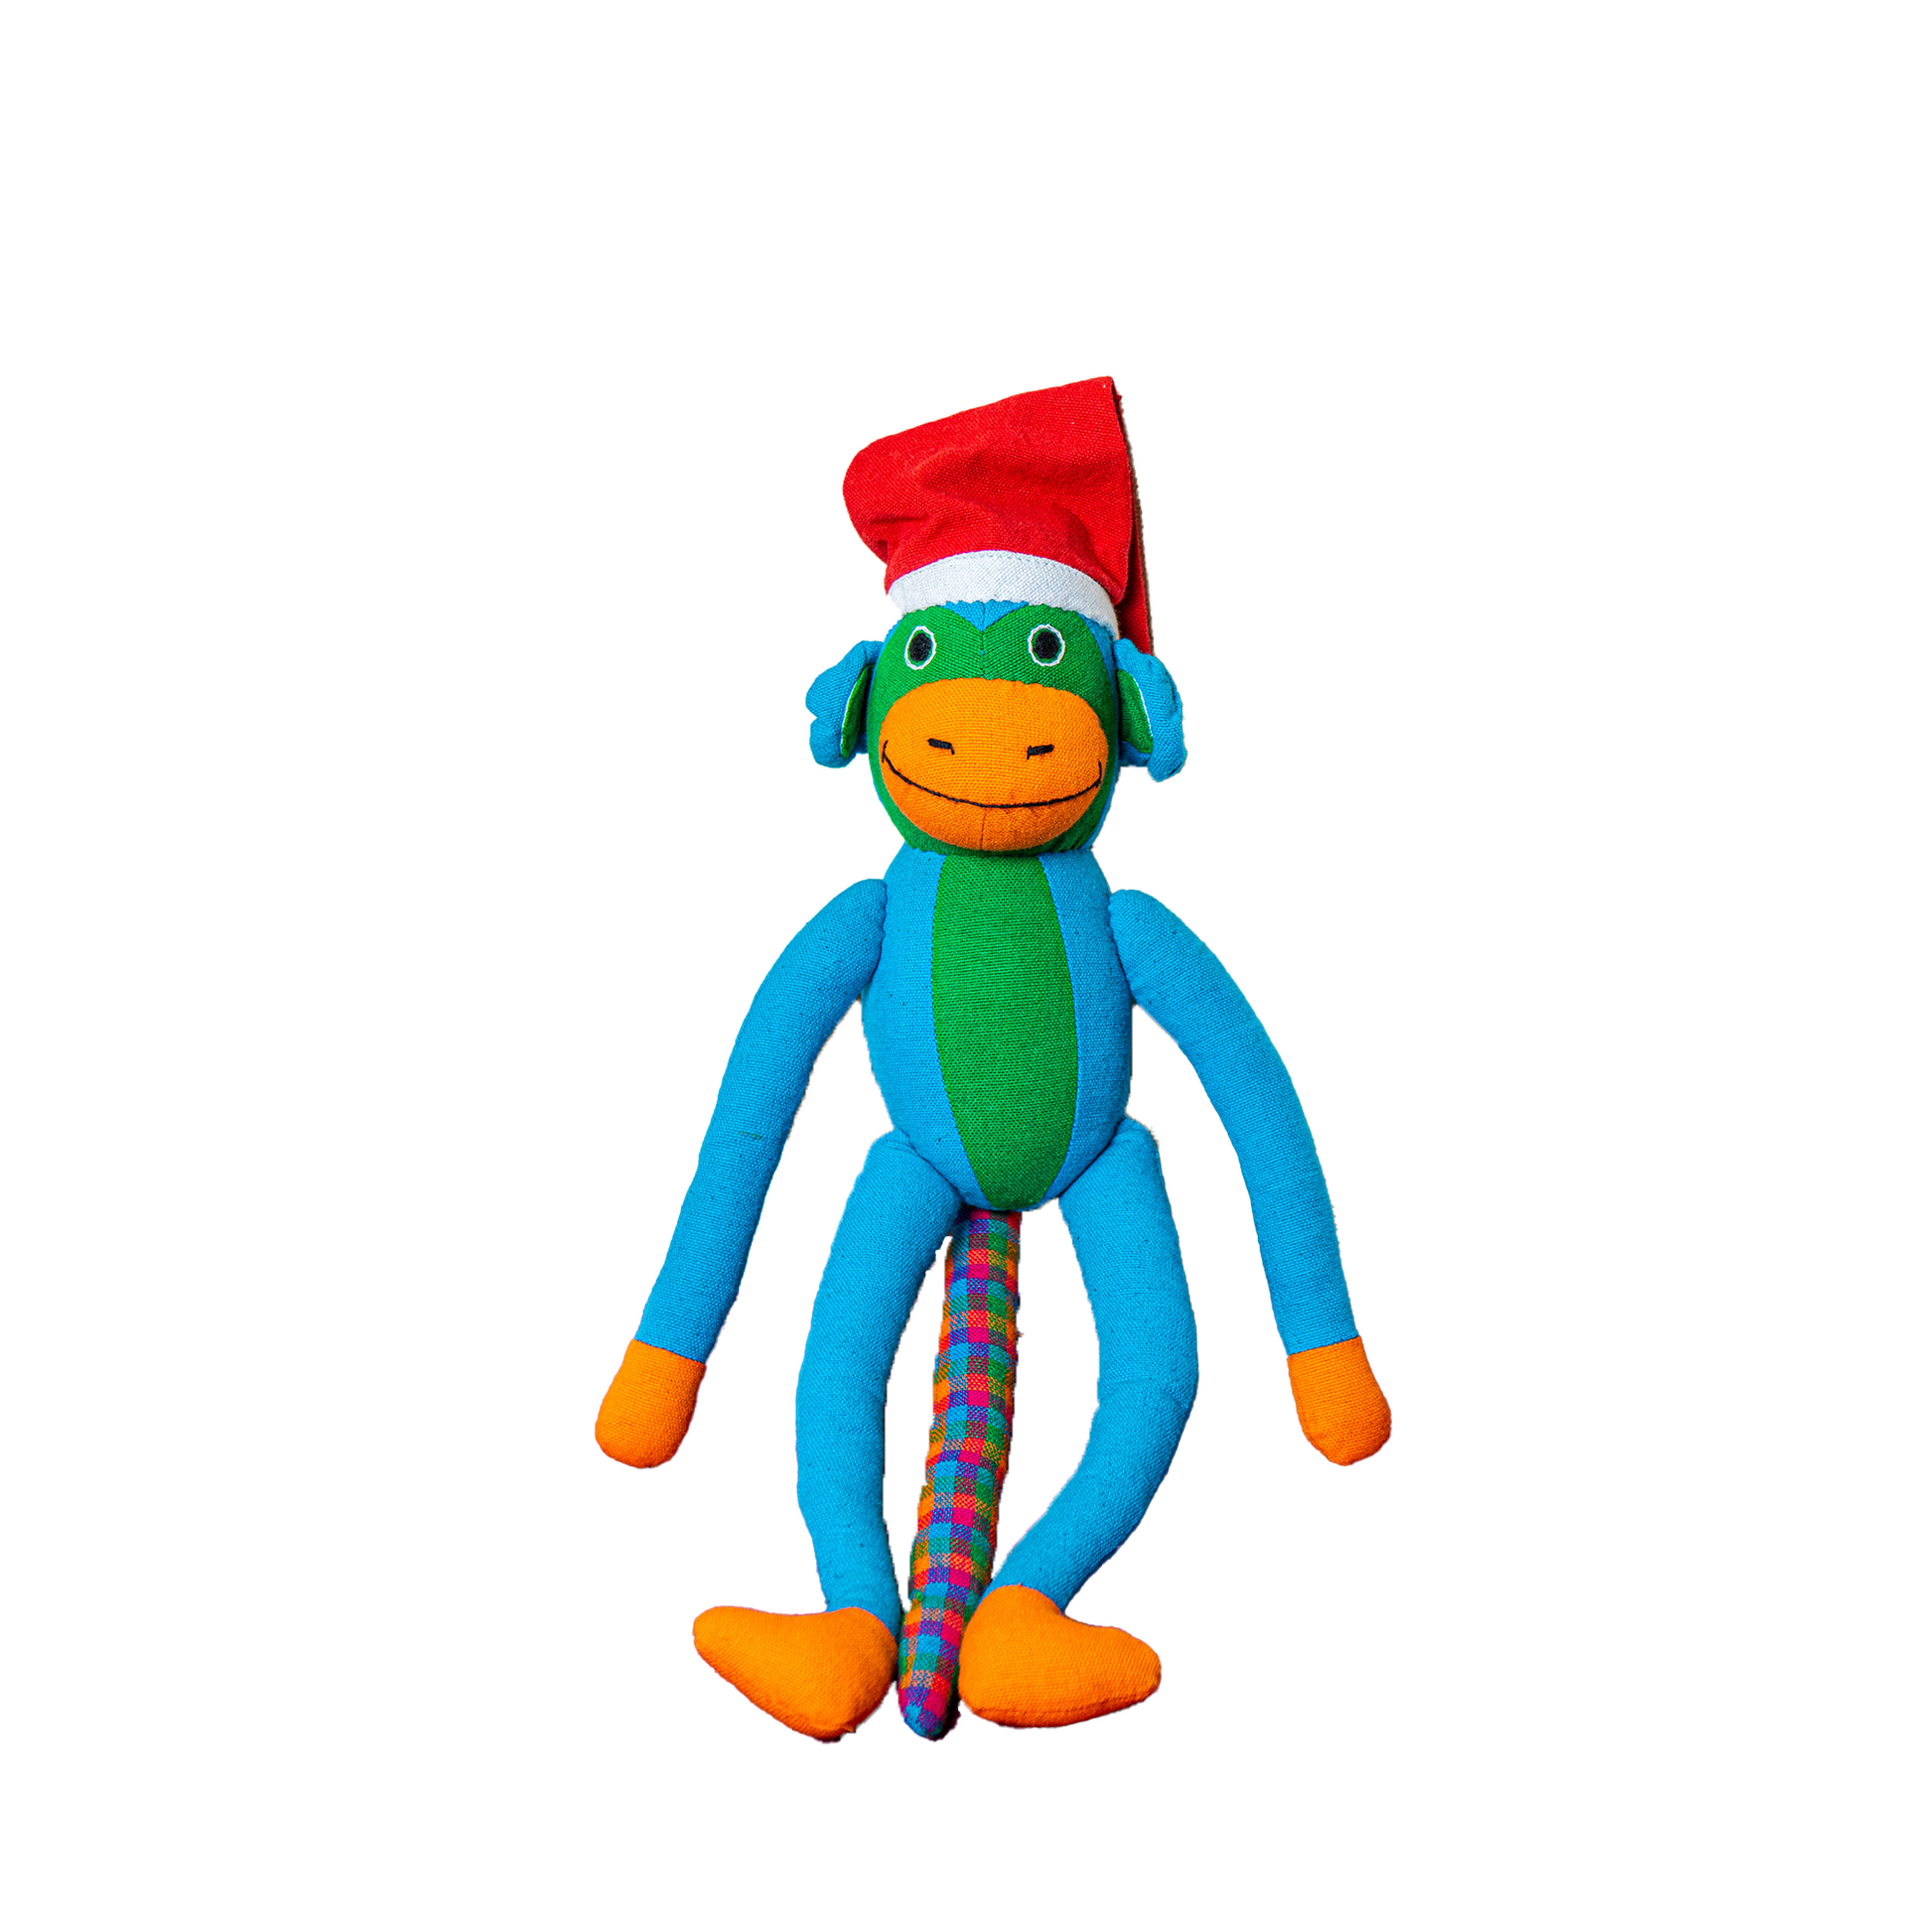 Soft Toy - Monkey Samson - Christmas Edition